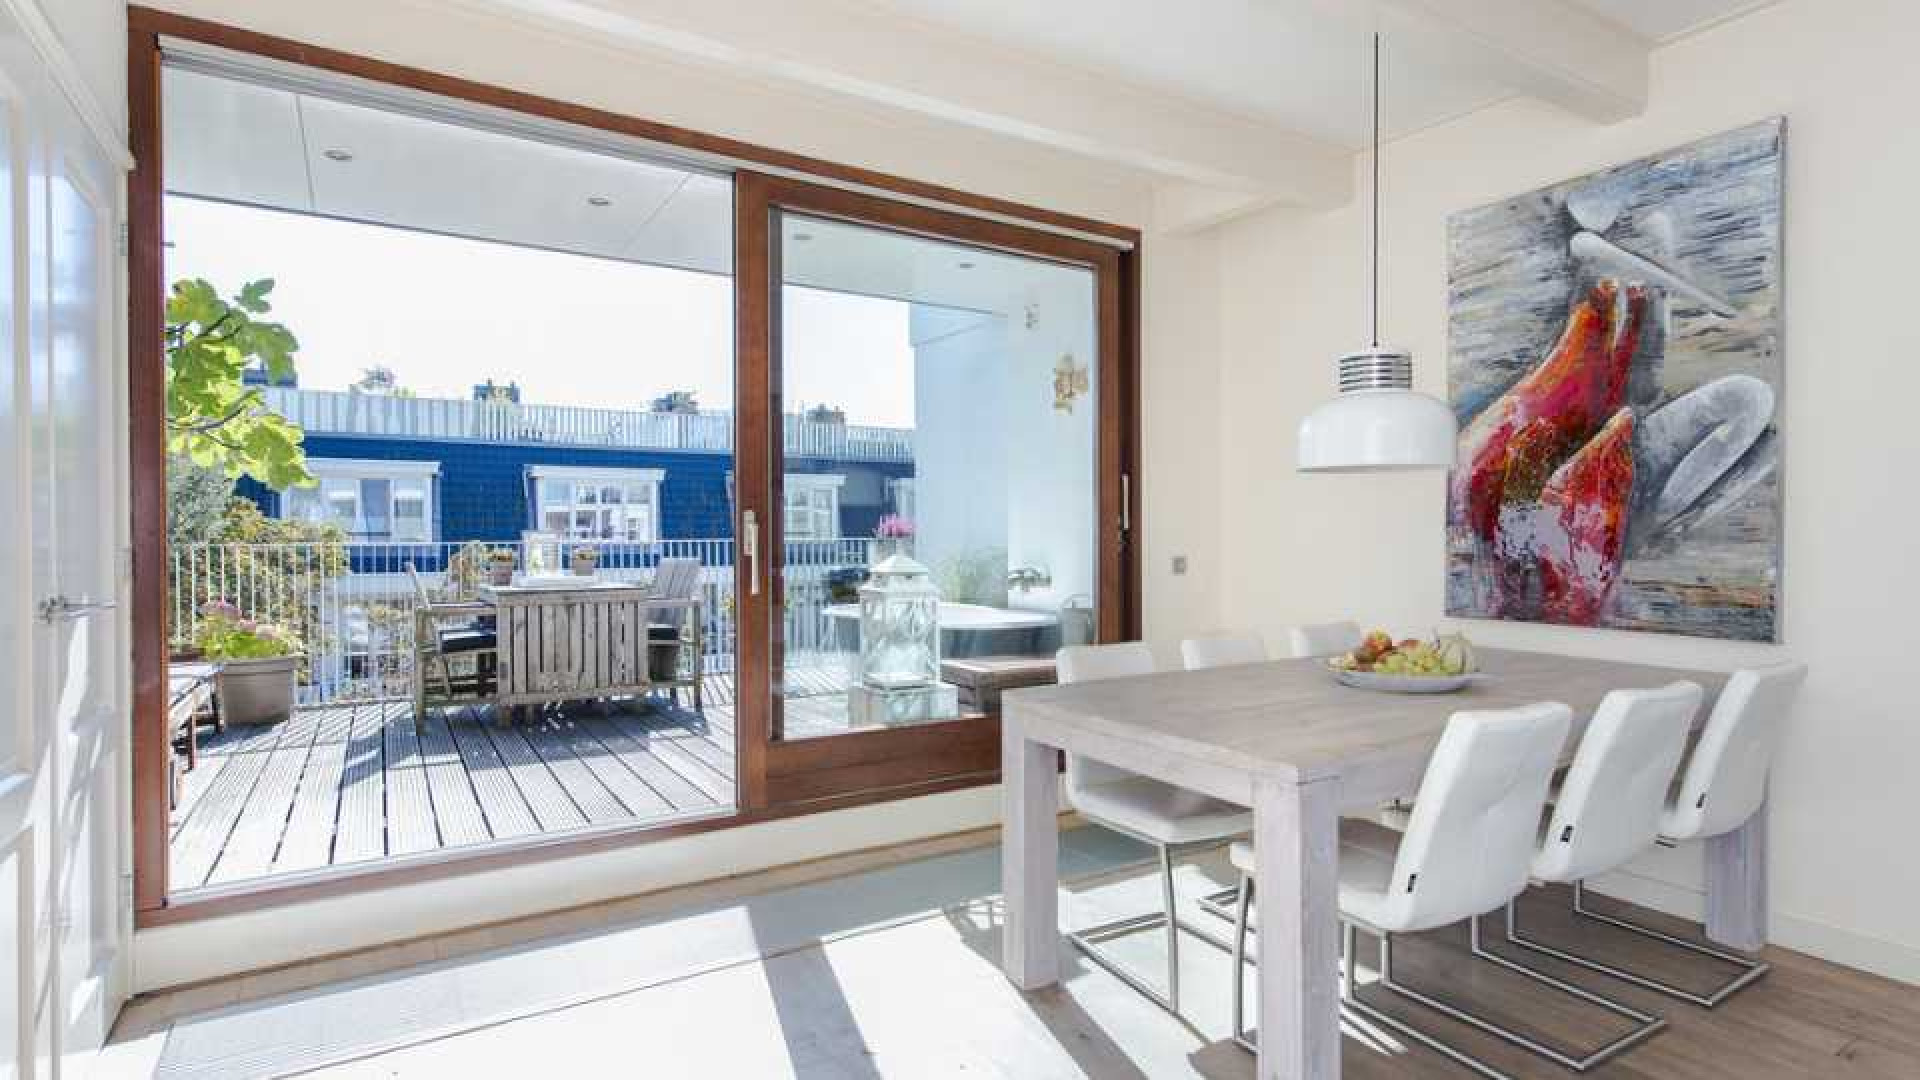 Armin van Buuren koopt luxe dubbel bovenhuis in Amsterdam Oud-West. Zie foto's